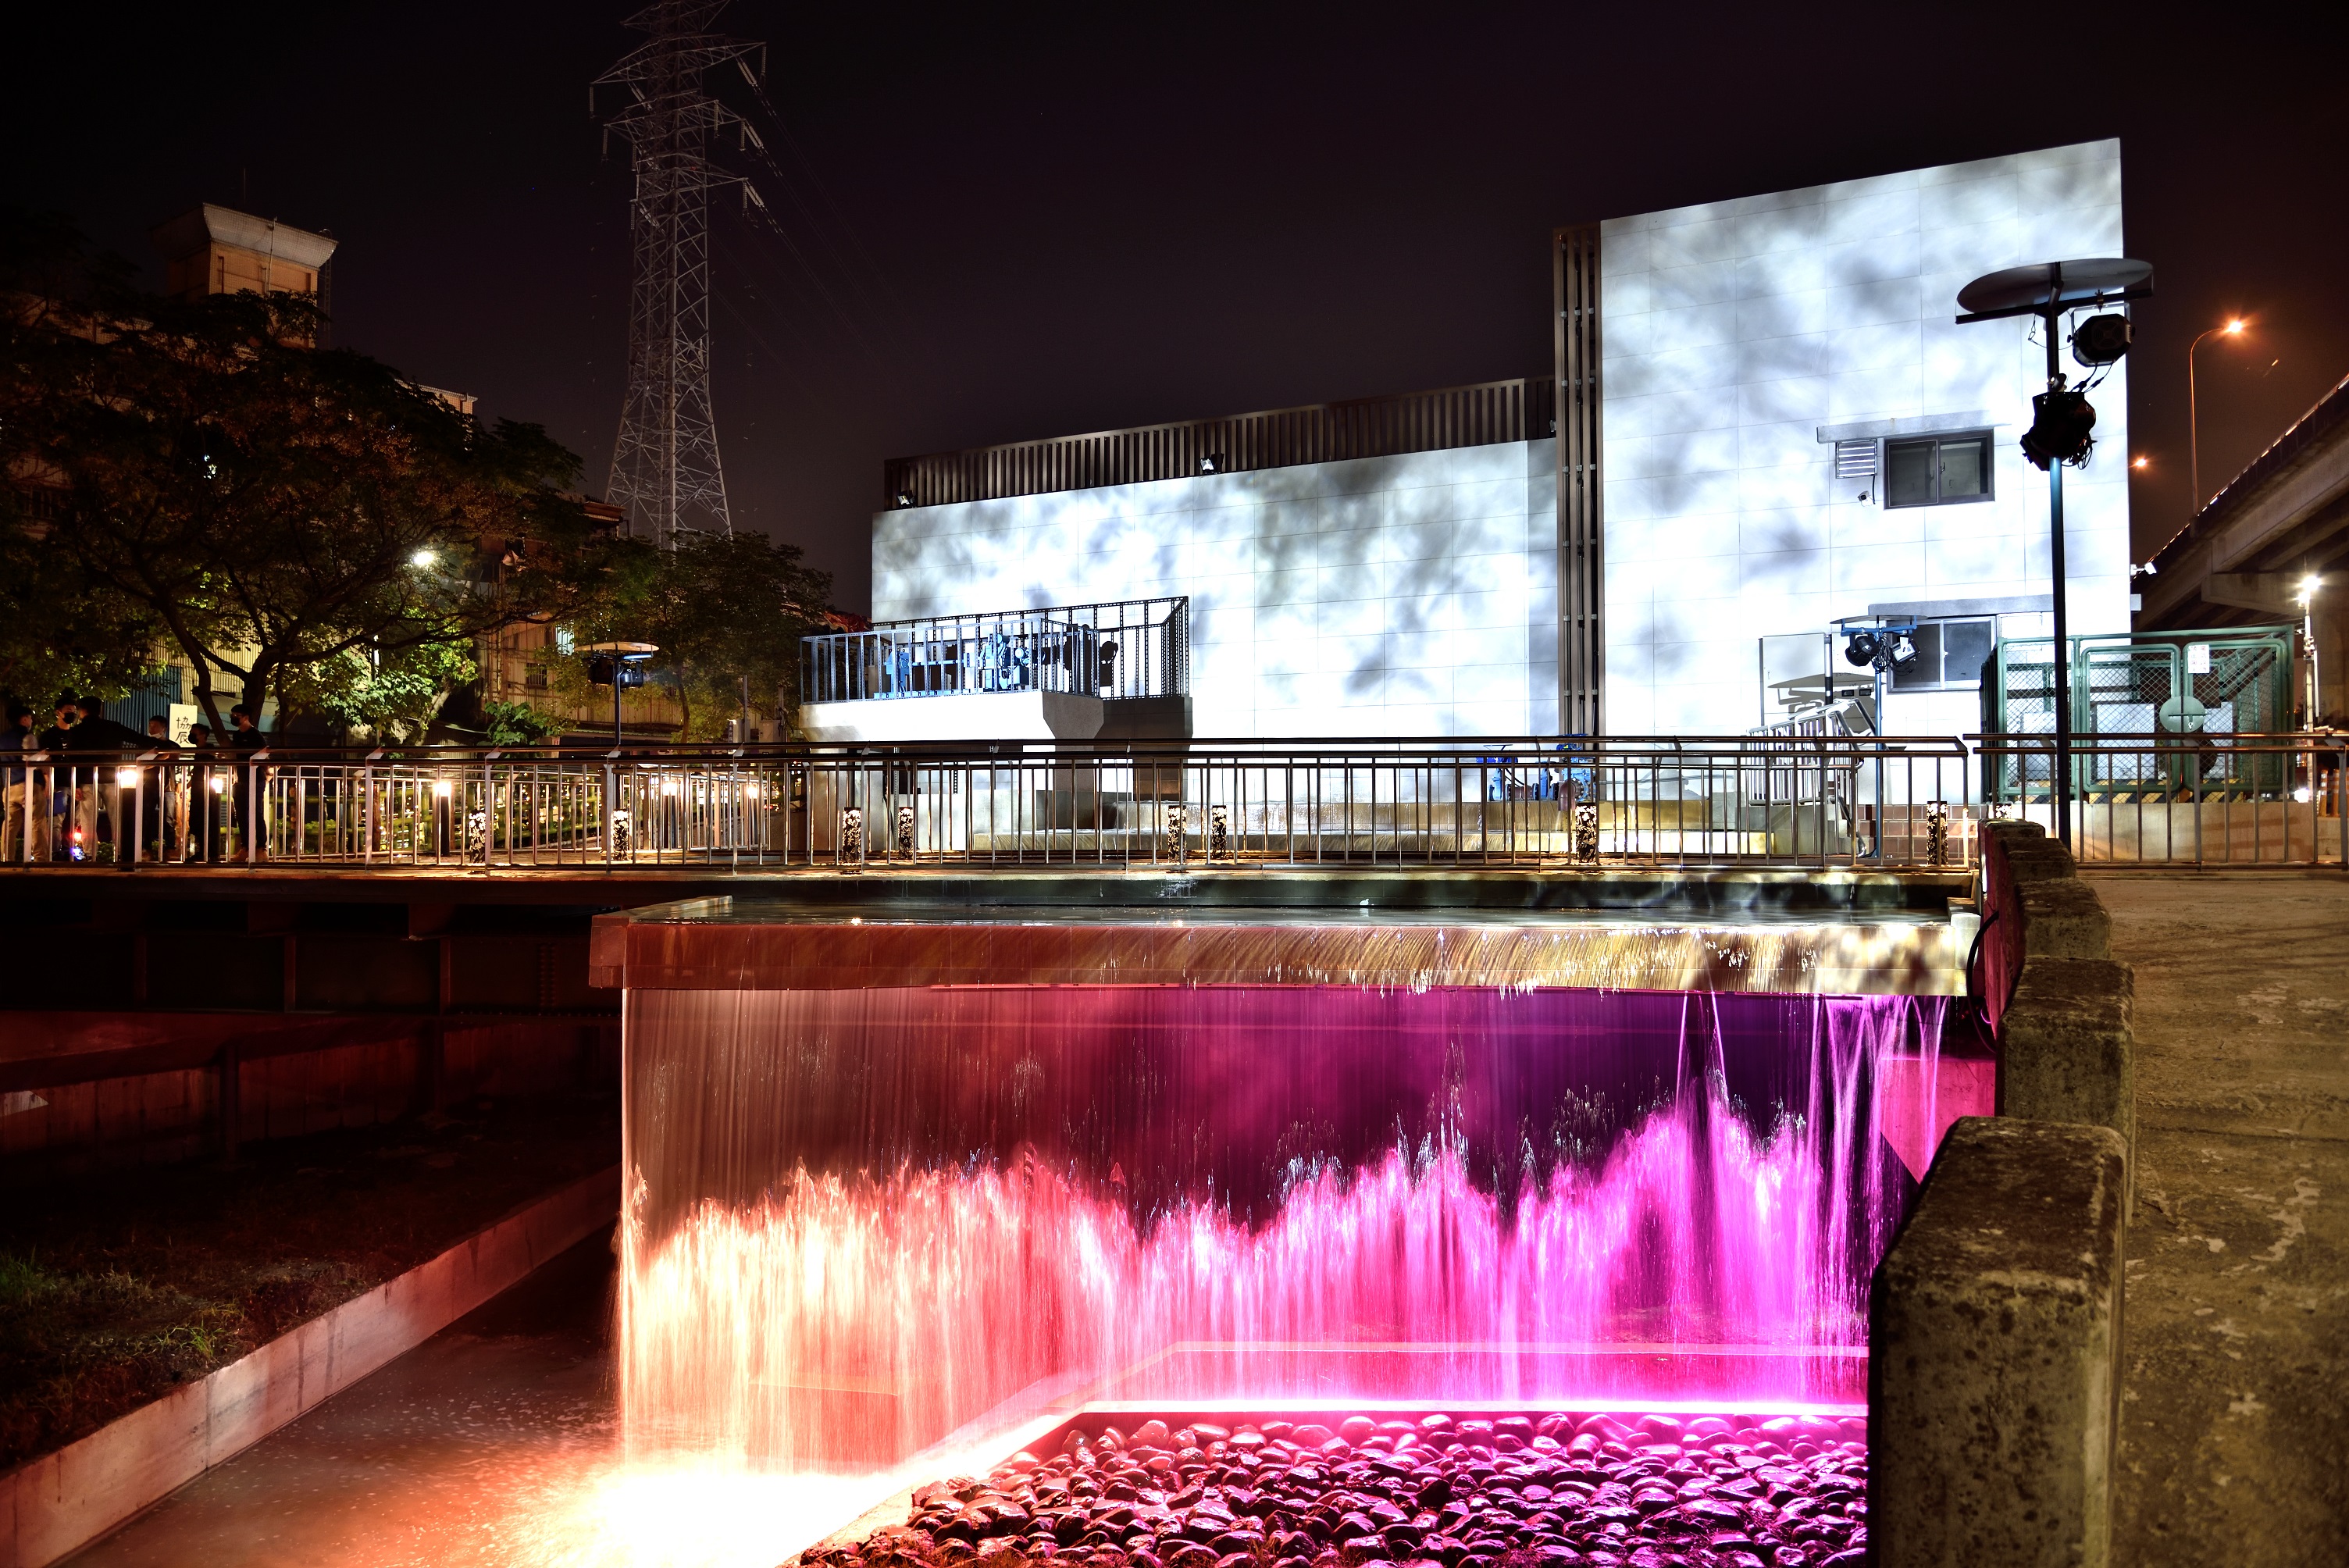 水紋燈及染燈暈染下，建築外觀呈現絢麗多彩的水波紋牆，波光粼粼宛如傾瀉而下彩虹瀑布